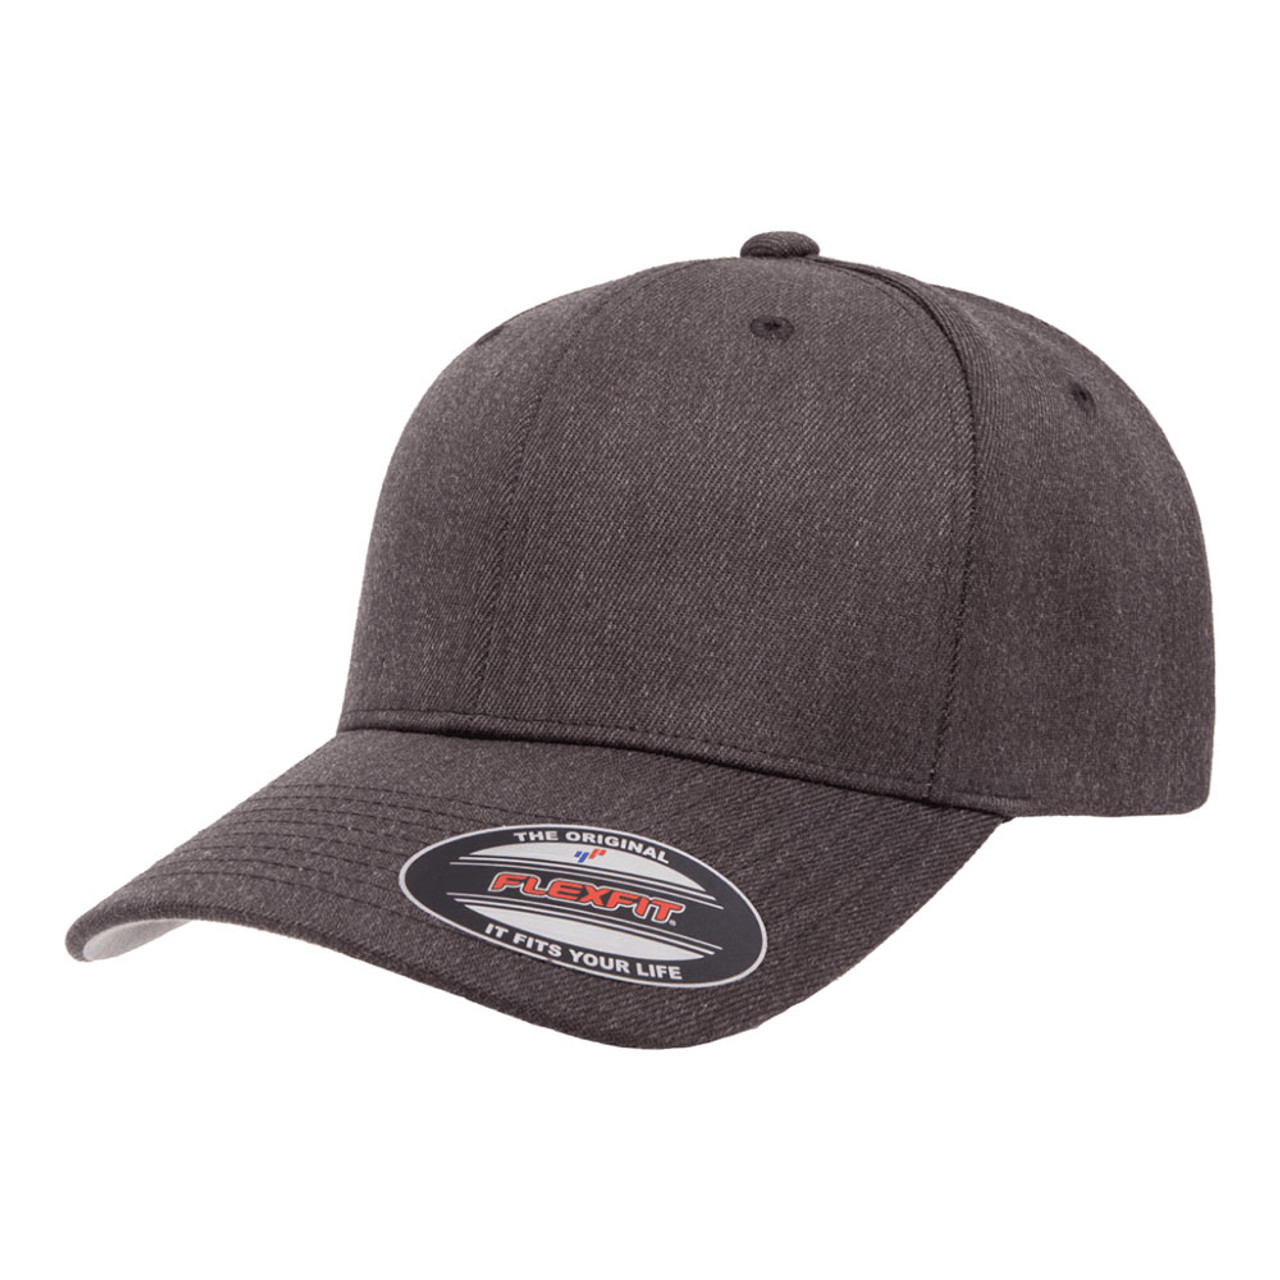 Flexfit Premium Wool Blend Cap - One Dozen | The Jac Hat